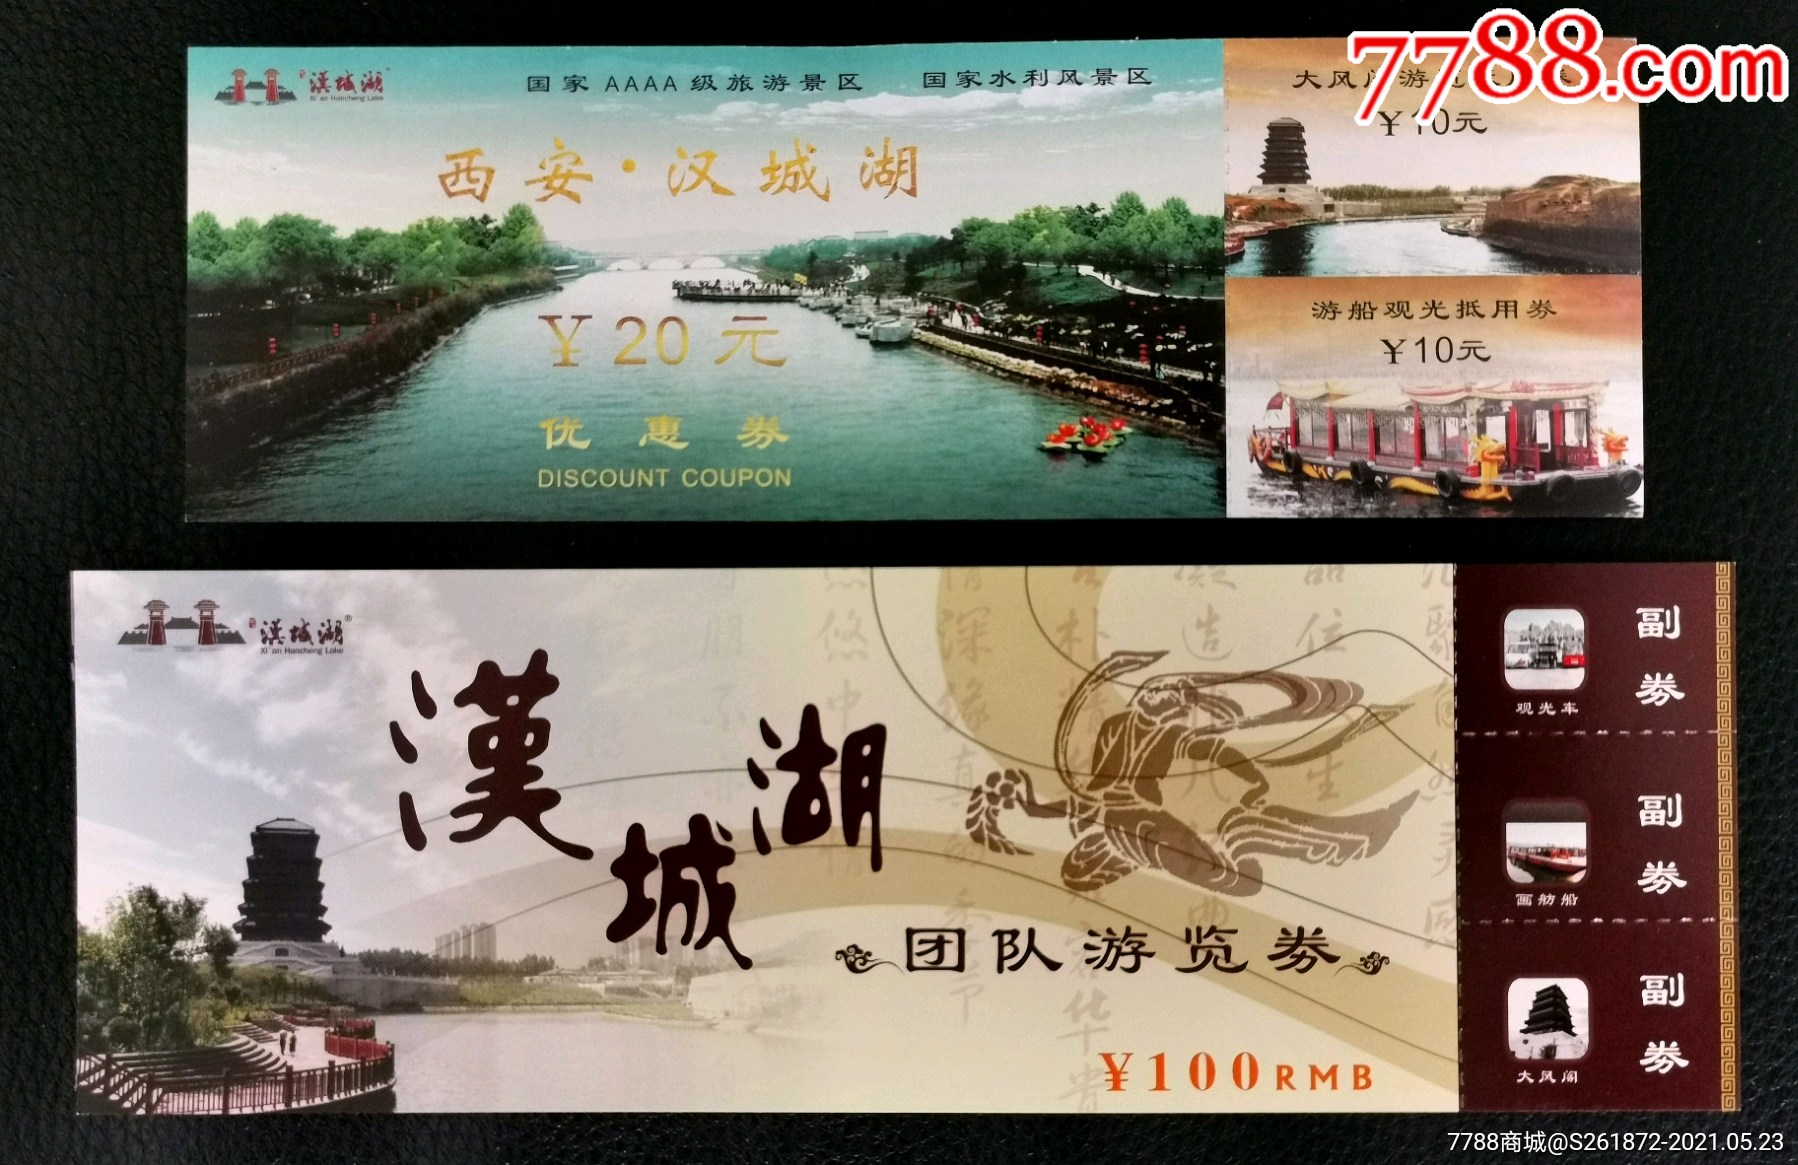 西安汉城湖-价格:45.0000元-se80370844-旅游景点门票